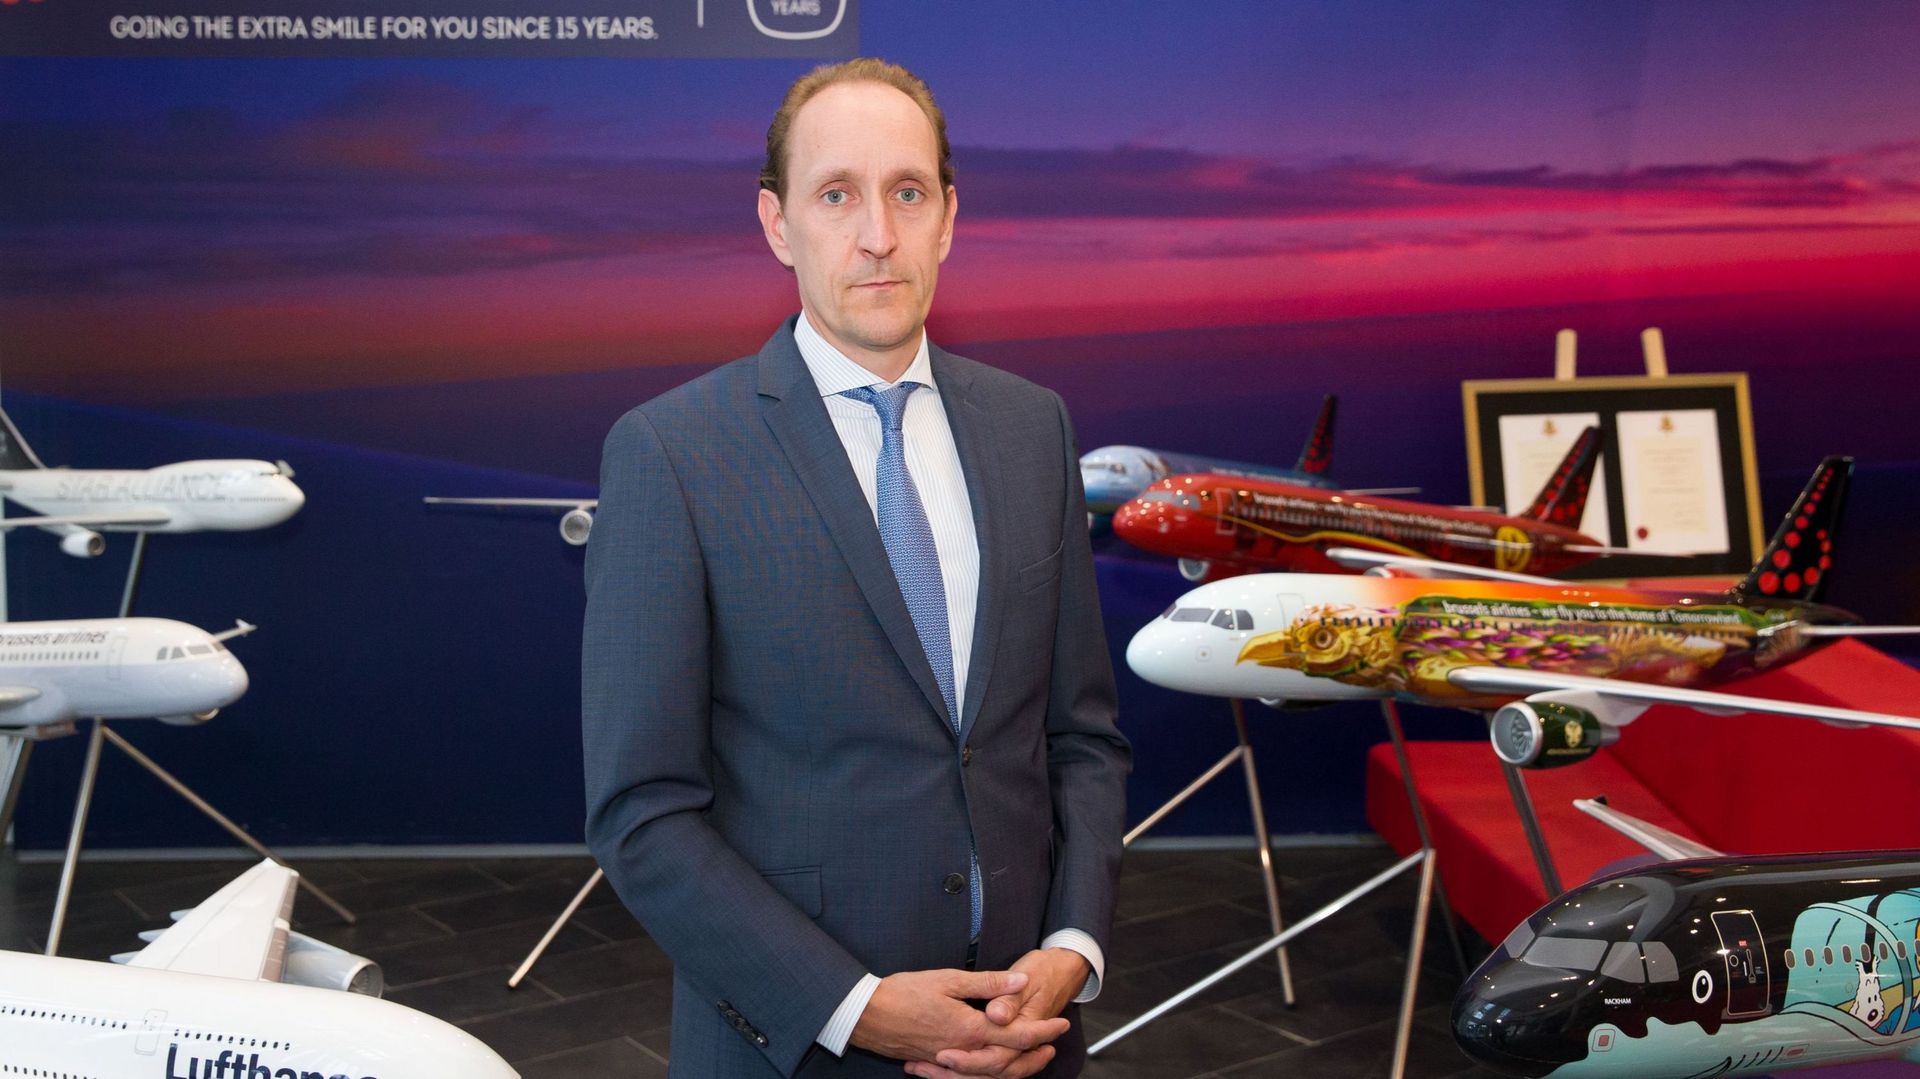 Pour le patron de Brussels Airlines "le système actuel ne pousse pas les gens à voyager".